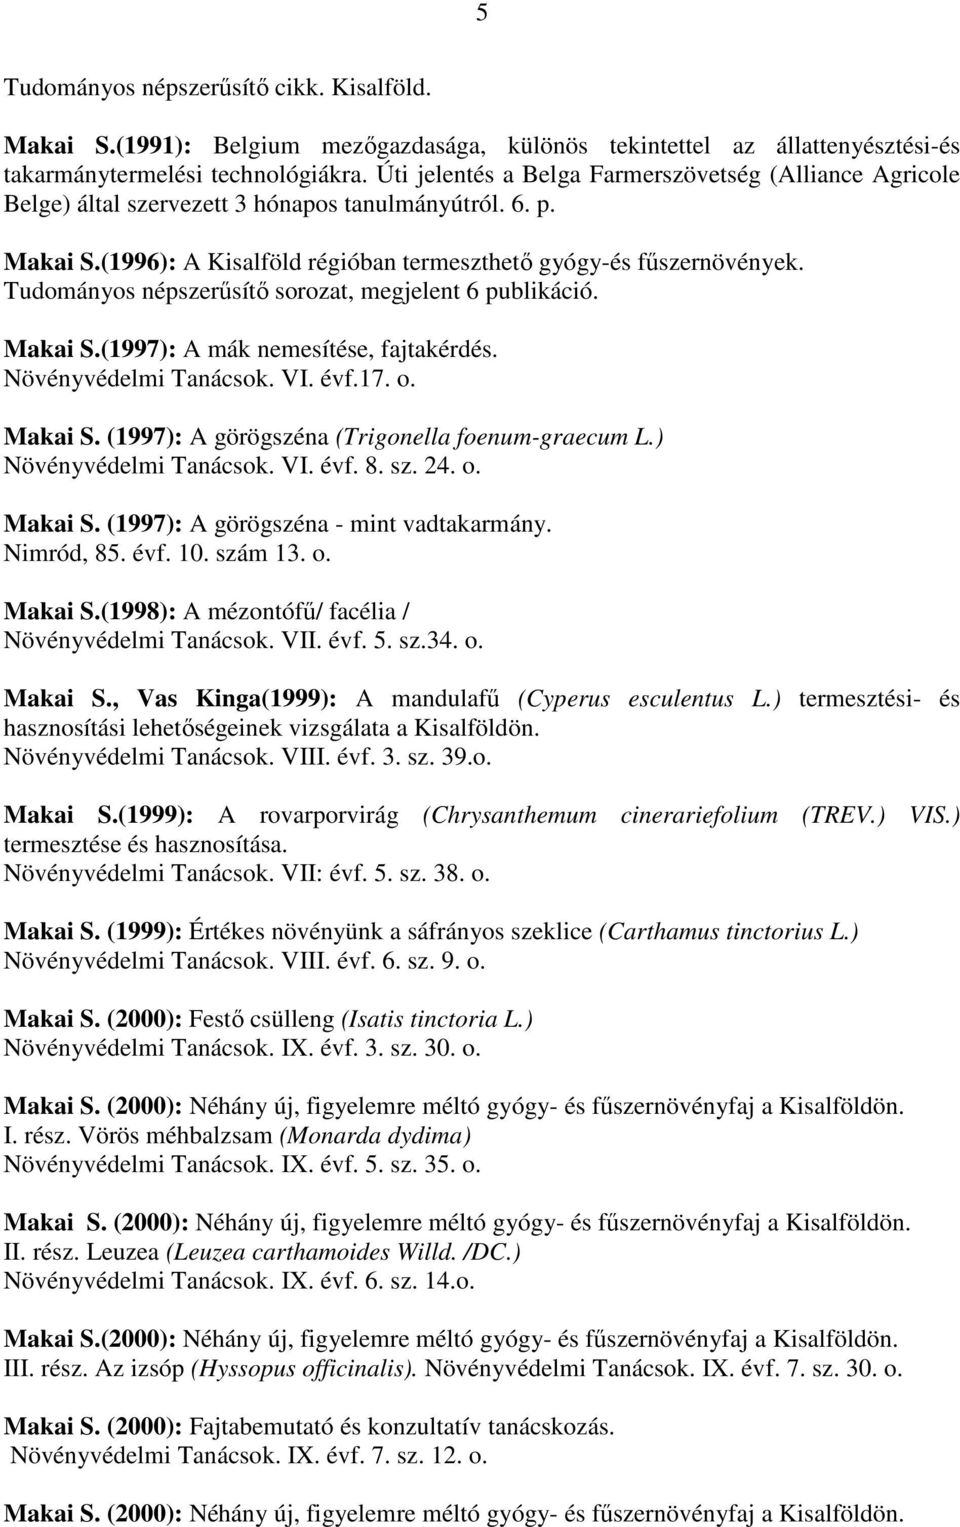 Tudományos népszerősítı sorozat, megjelent 6 publikáció. Makai S.(1997): A mák nemesítése, fajtakérdés. Növényvédelmi Tanácsok. VI. évf.17. o. Makai S. (1997): A görögszéna (Trigonella foenum-graecum L.